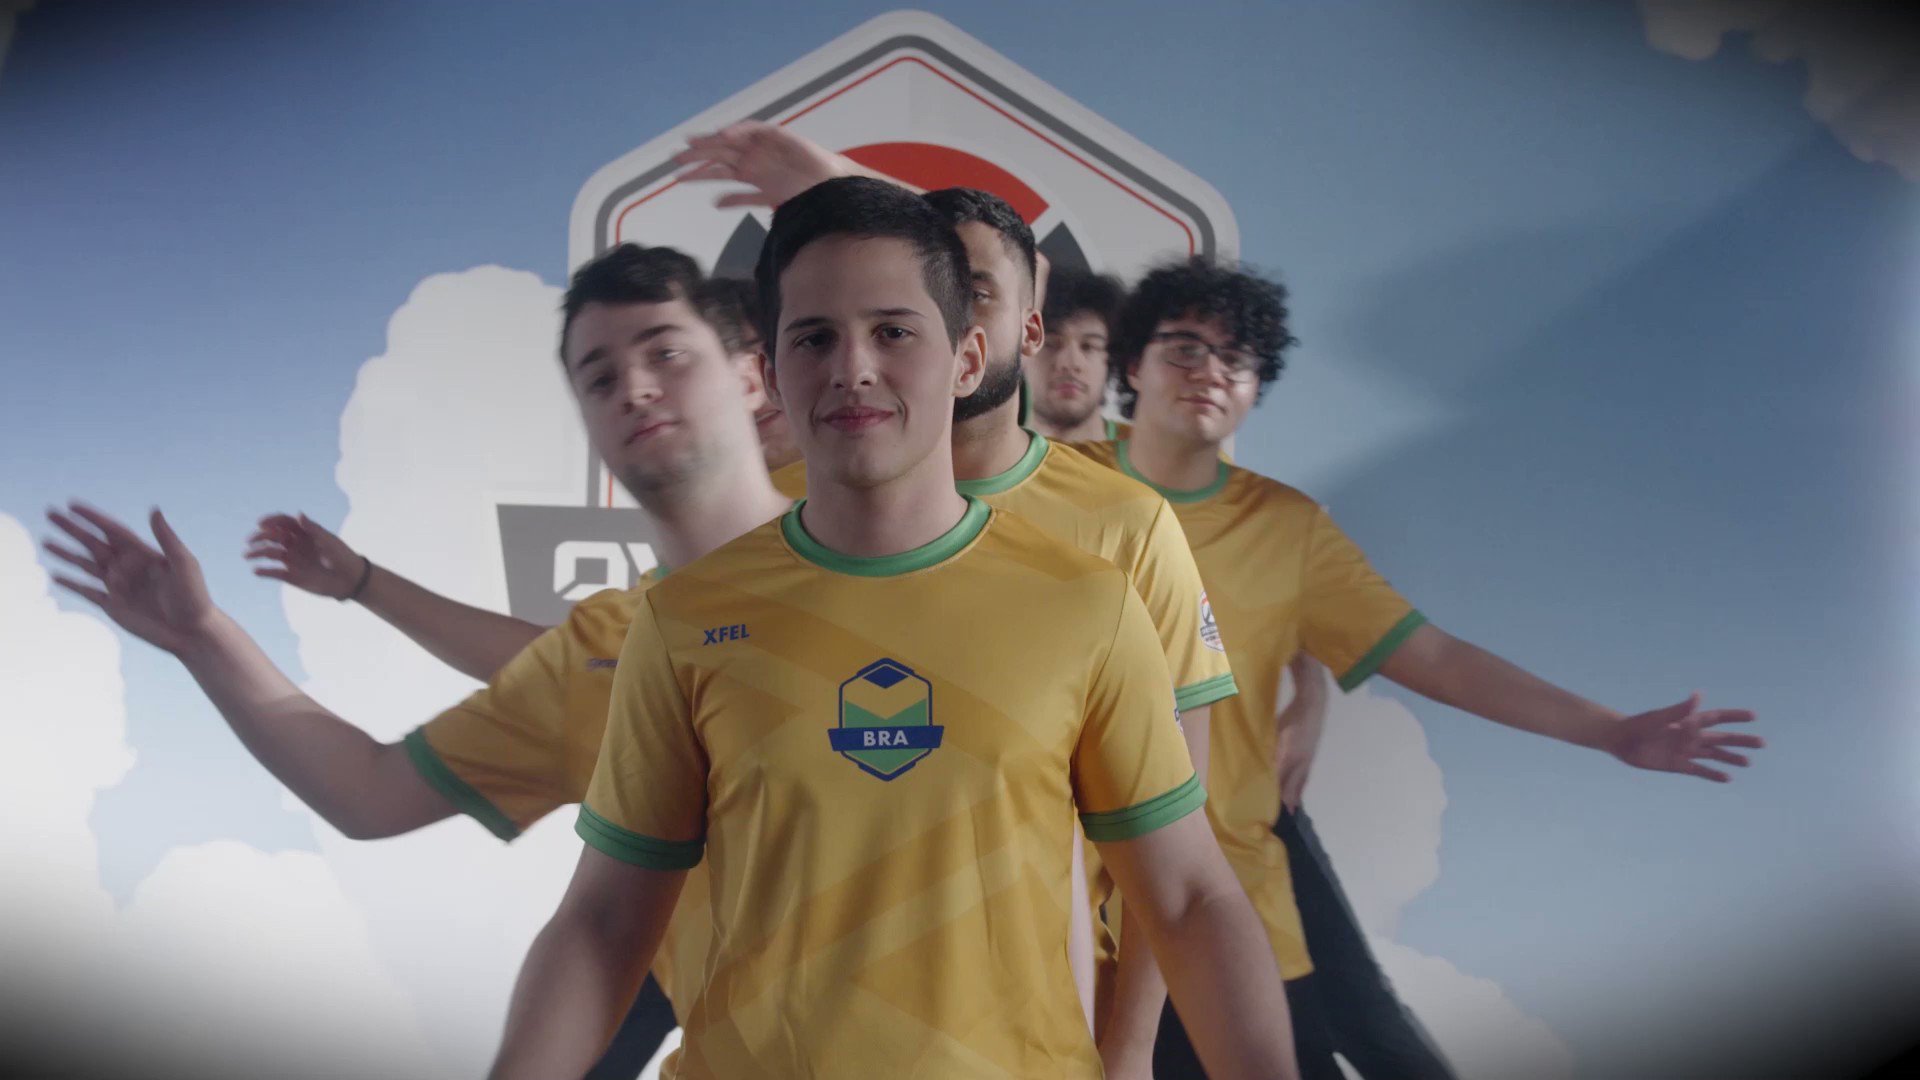 Overwatch: Jogadoras brasileiras ganham apoio da Blizzard e criam campeonato